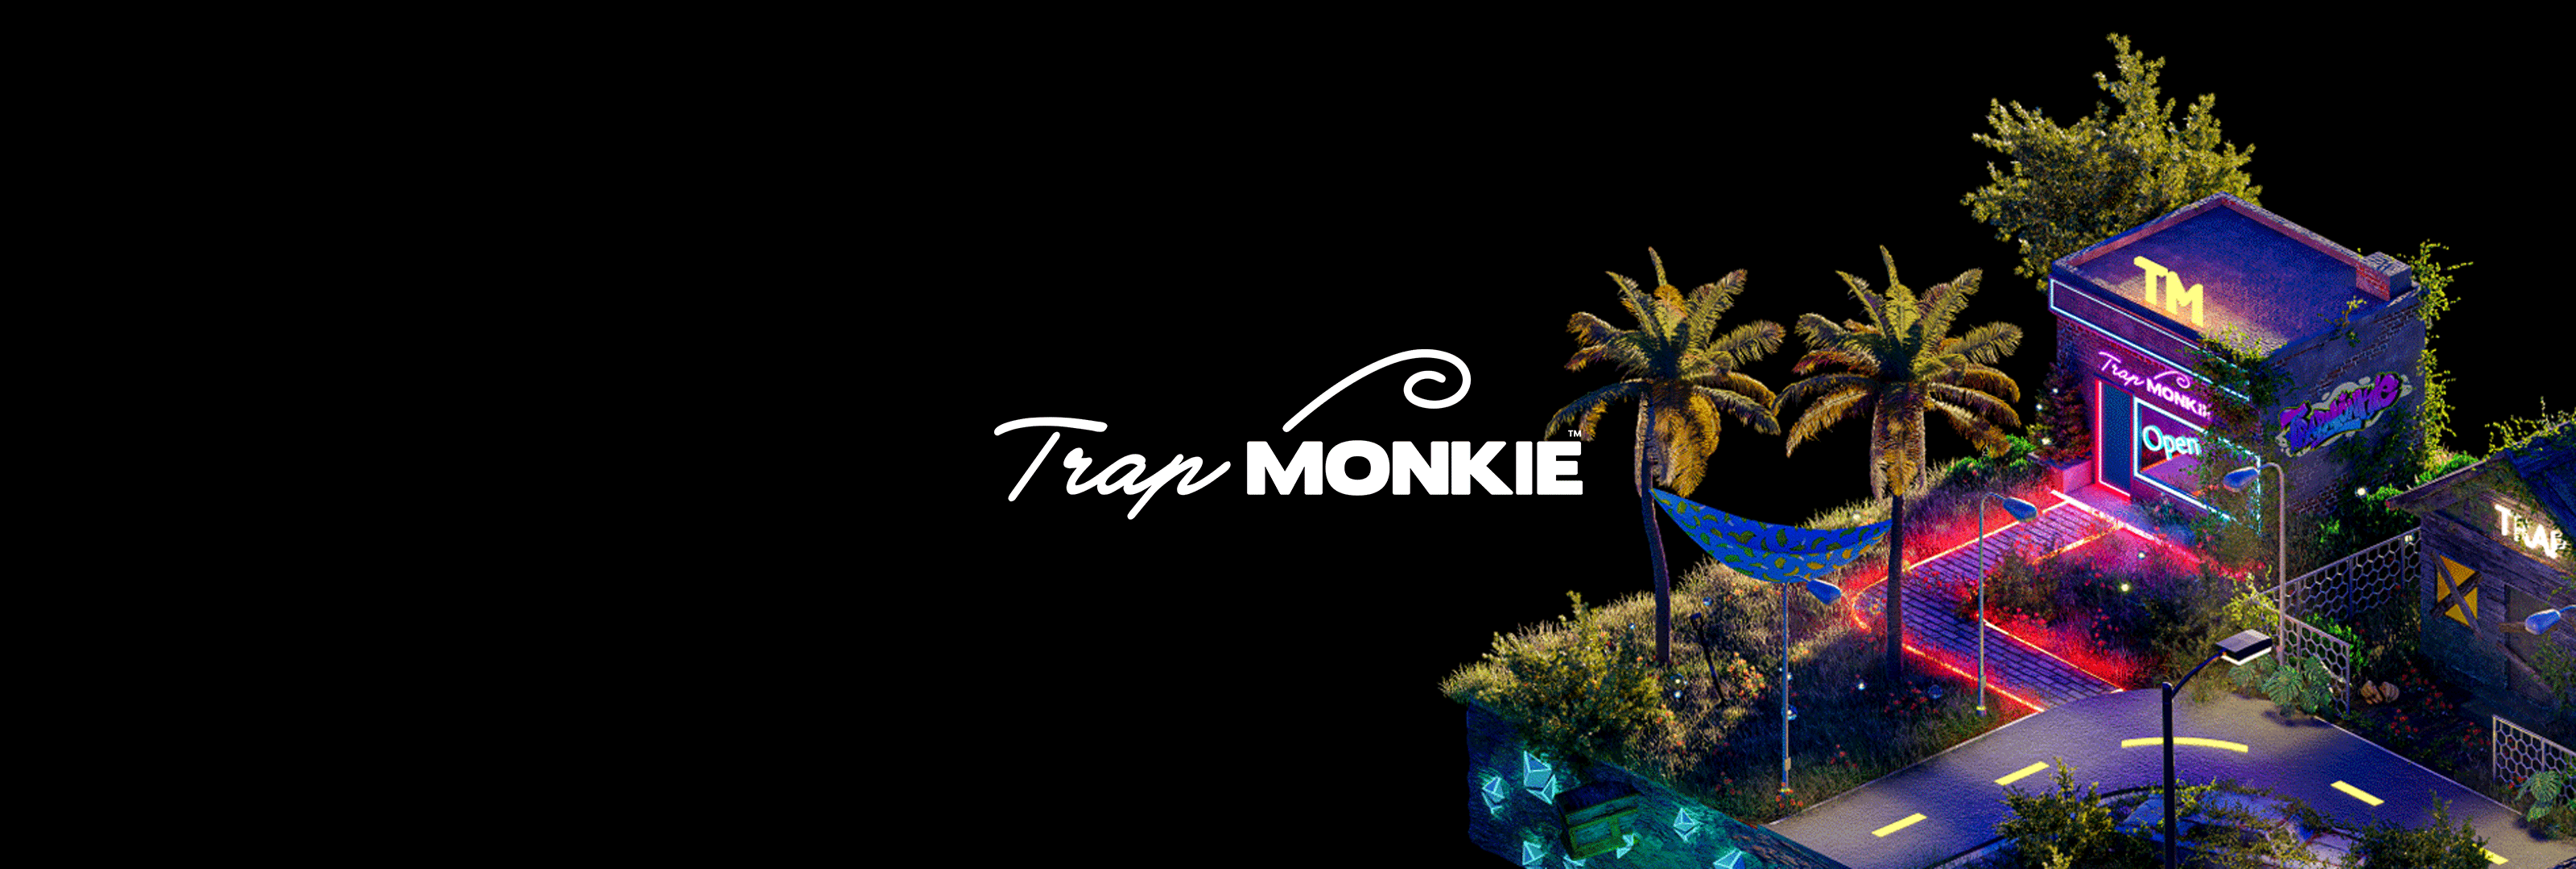 TrapMonkie_LLC banner